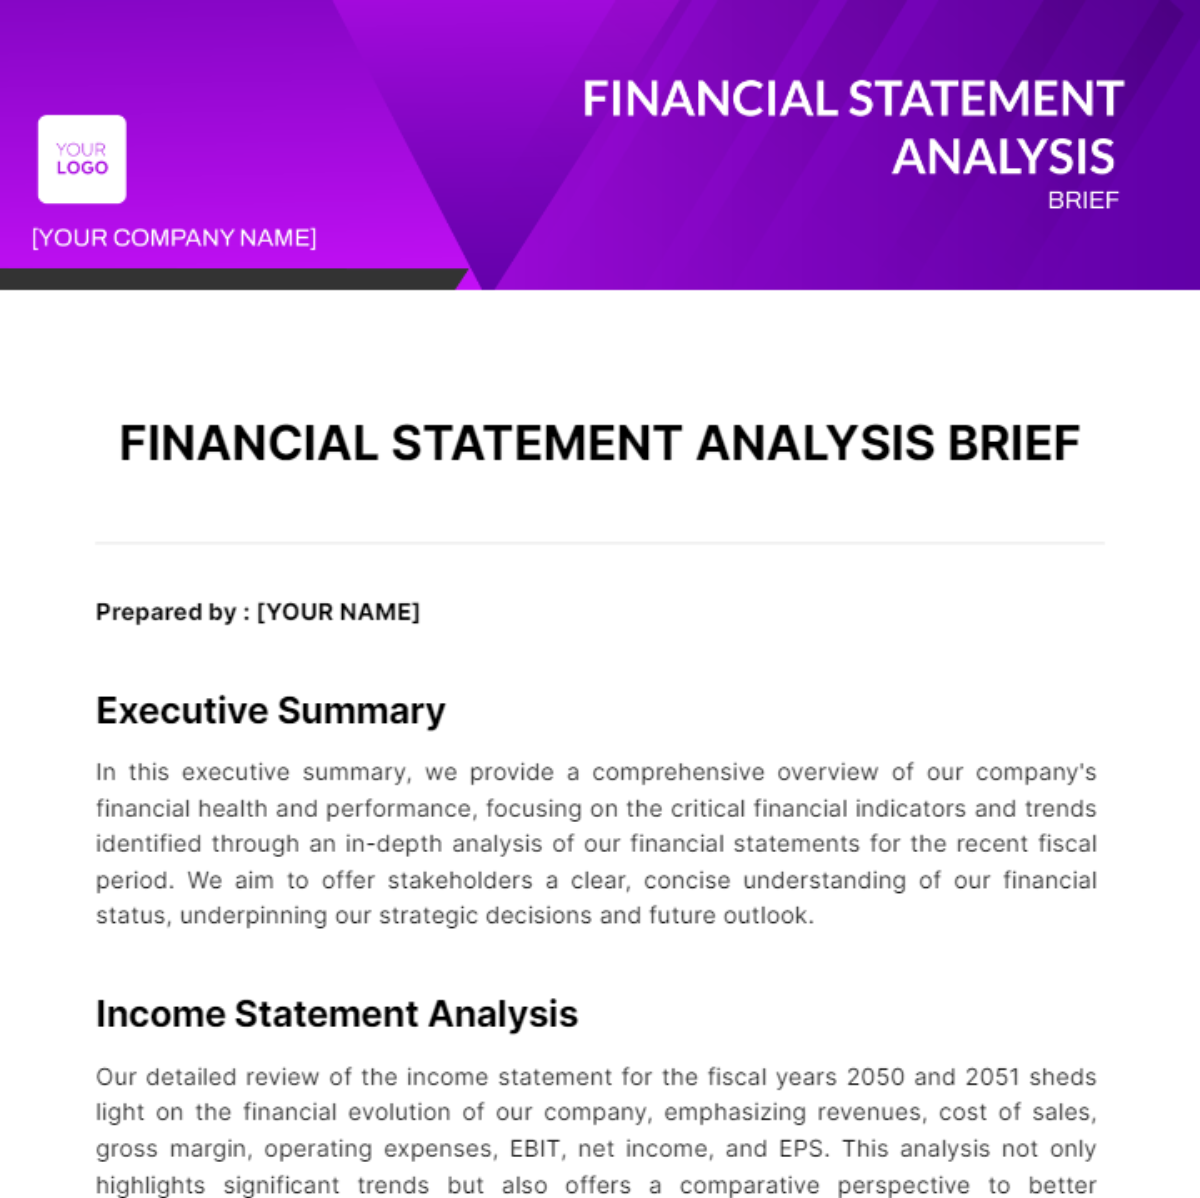 Financial Statement Analysis Brief Template